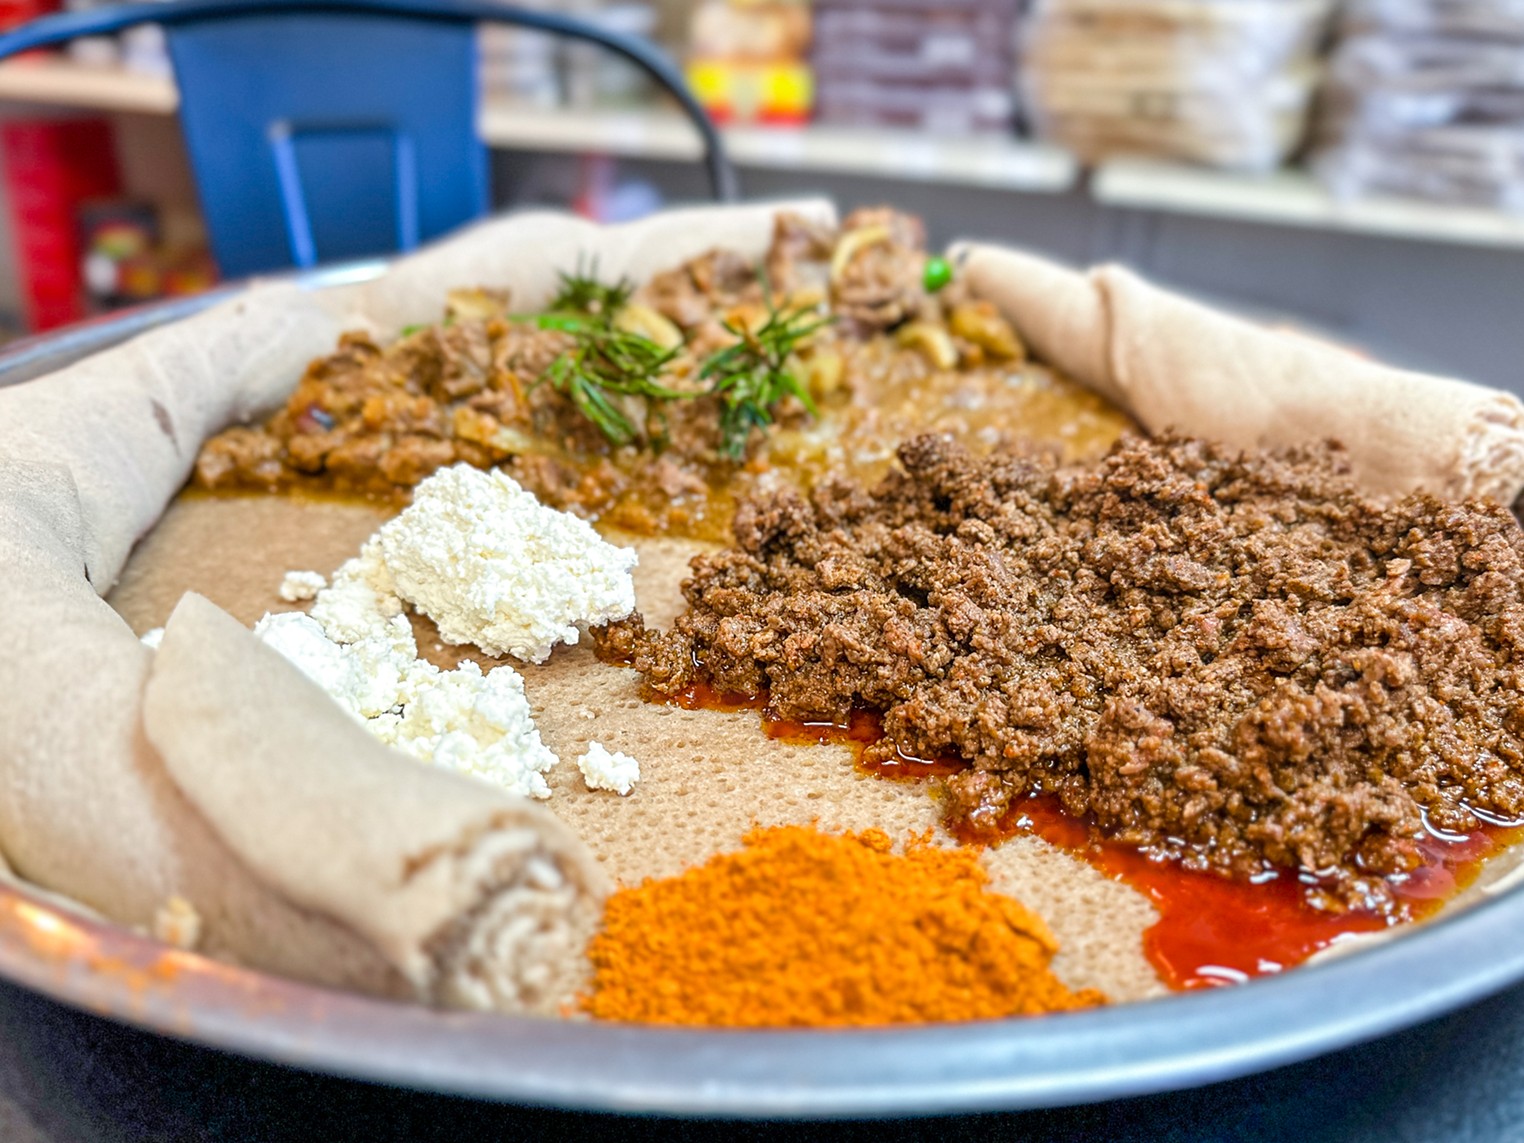 Agoza Kitchen: A Hidden Ethiopian Restaurant and Mini Mart in North Dallas